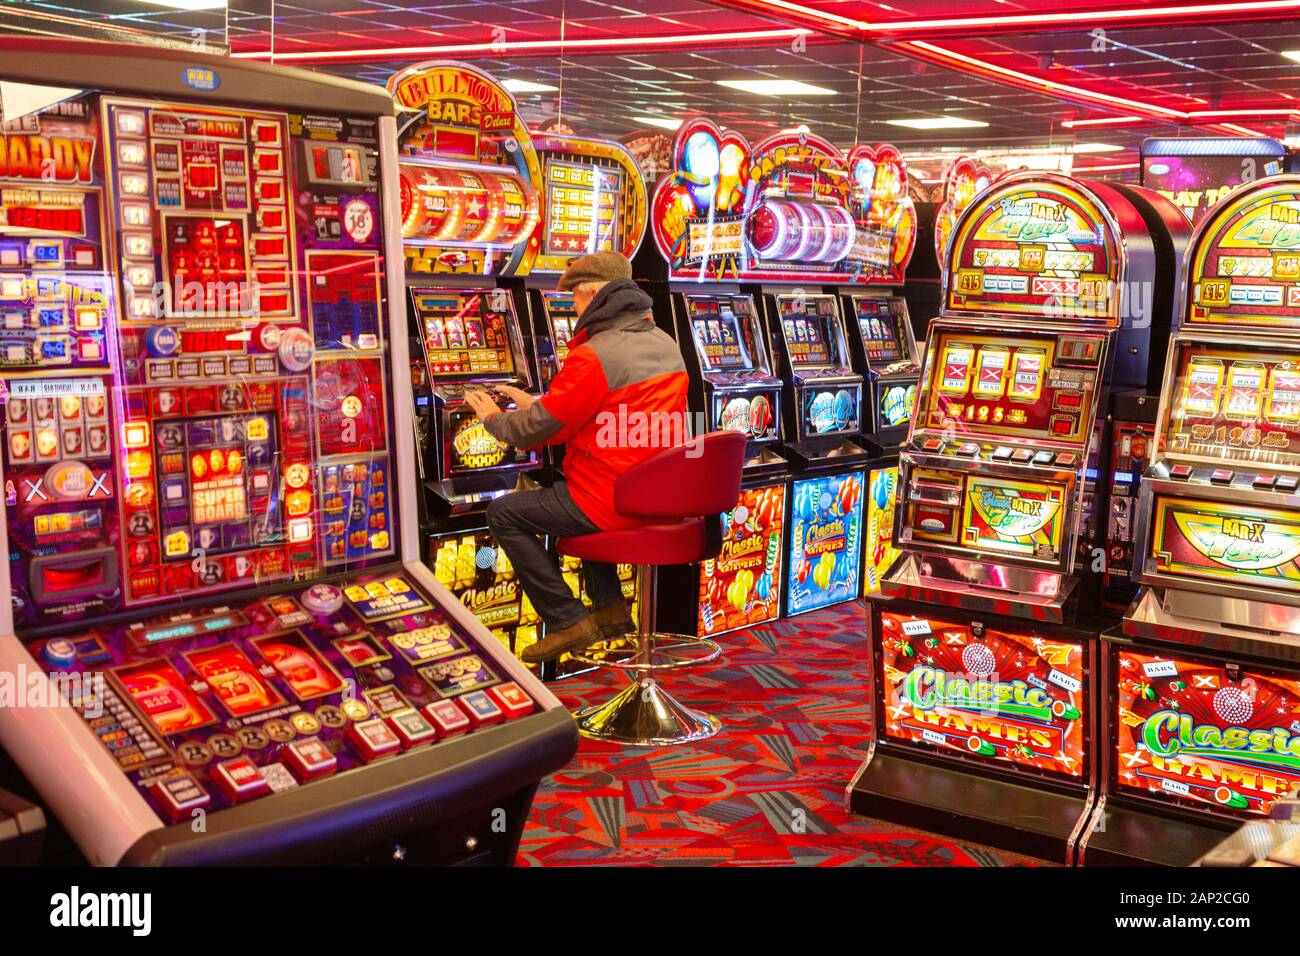 Gioco d'azzardo UK - un uomo che gioca slot machine in un casinò, esempio di uno stile di vita del gioco d'azzardo; Skegness Lincolnshire Inghilterra UK Foto Stock